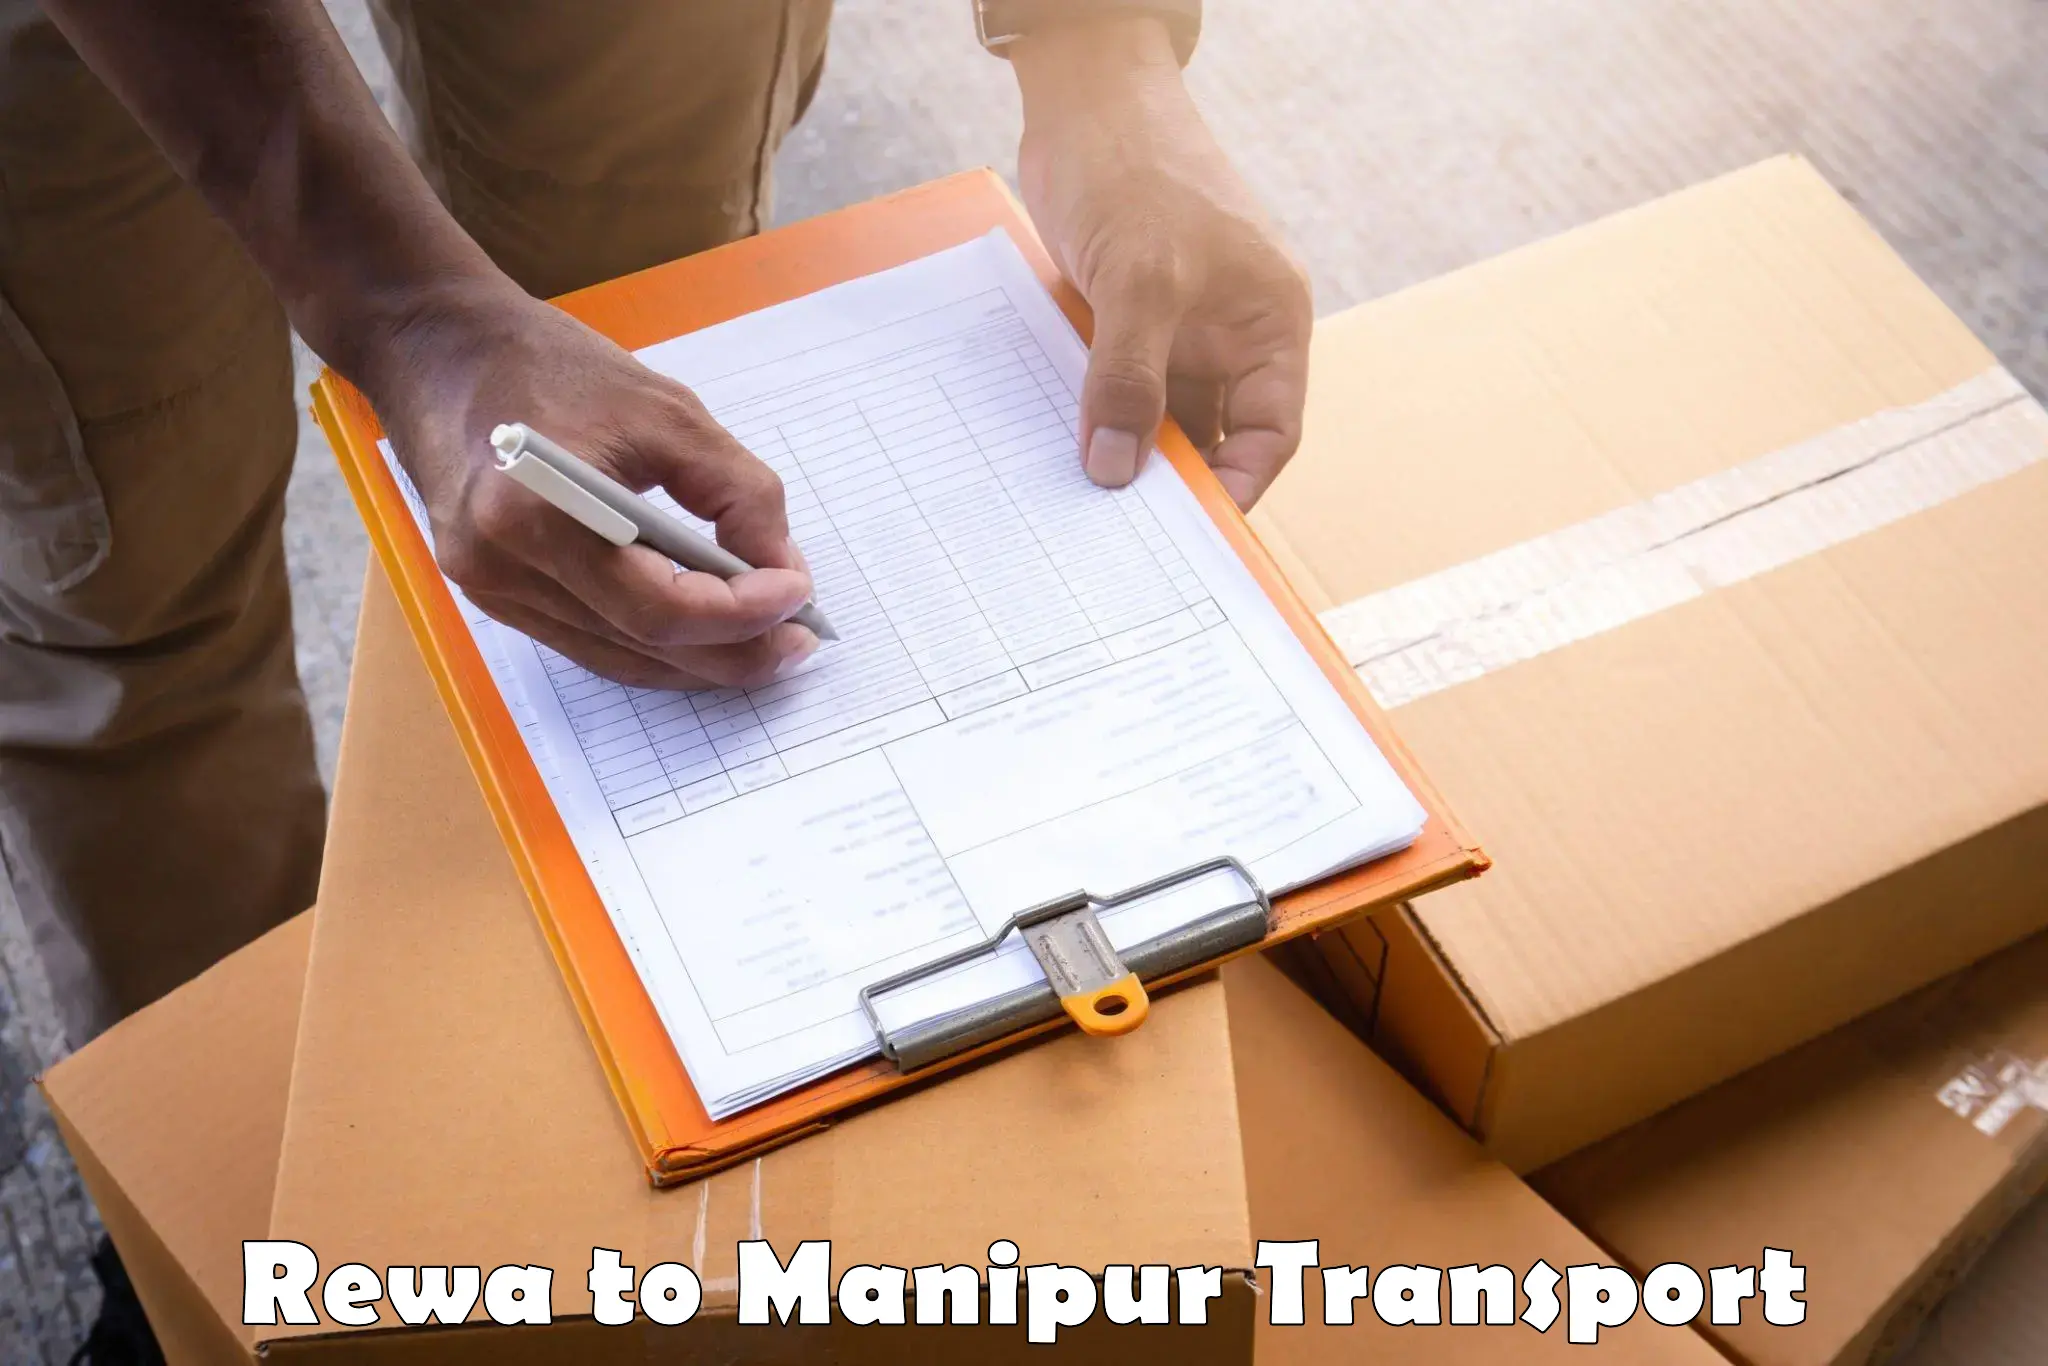 Online transport service Rewa to Manipur